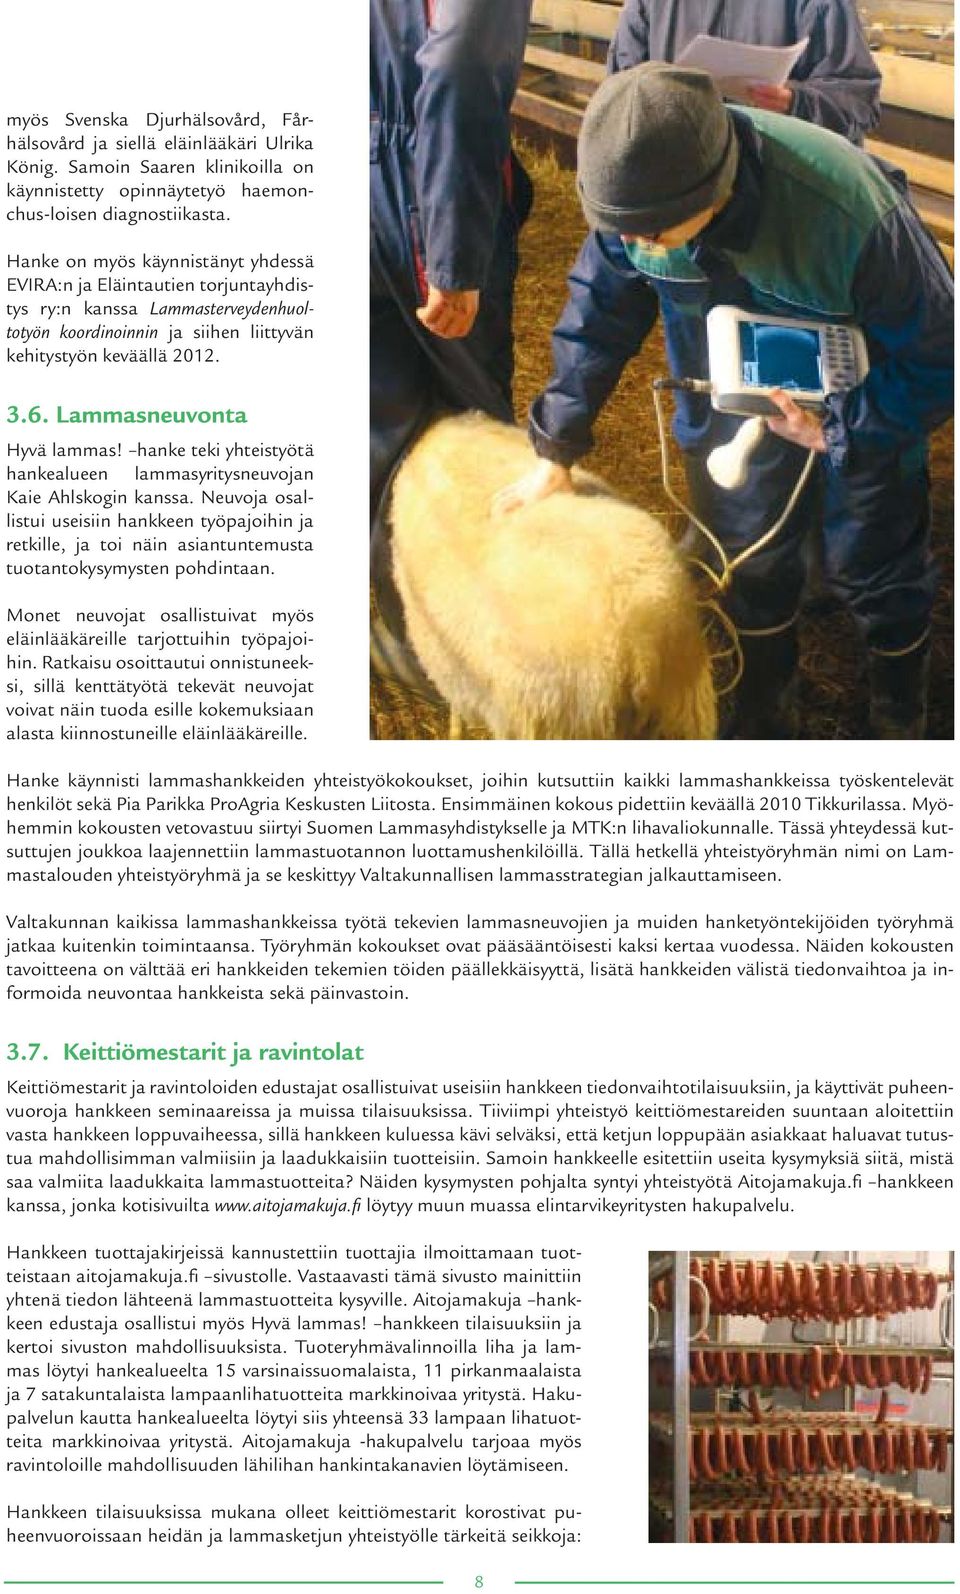 Lammasneuvonta Hyvä lammas! hanke teki yhteistyötä hankealueen lammasyritysneuvojan Kaie Ahlskogin kanssa.